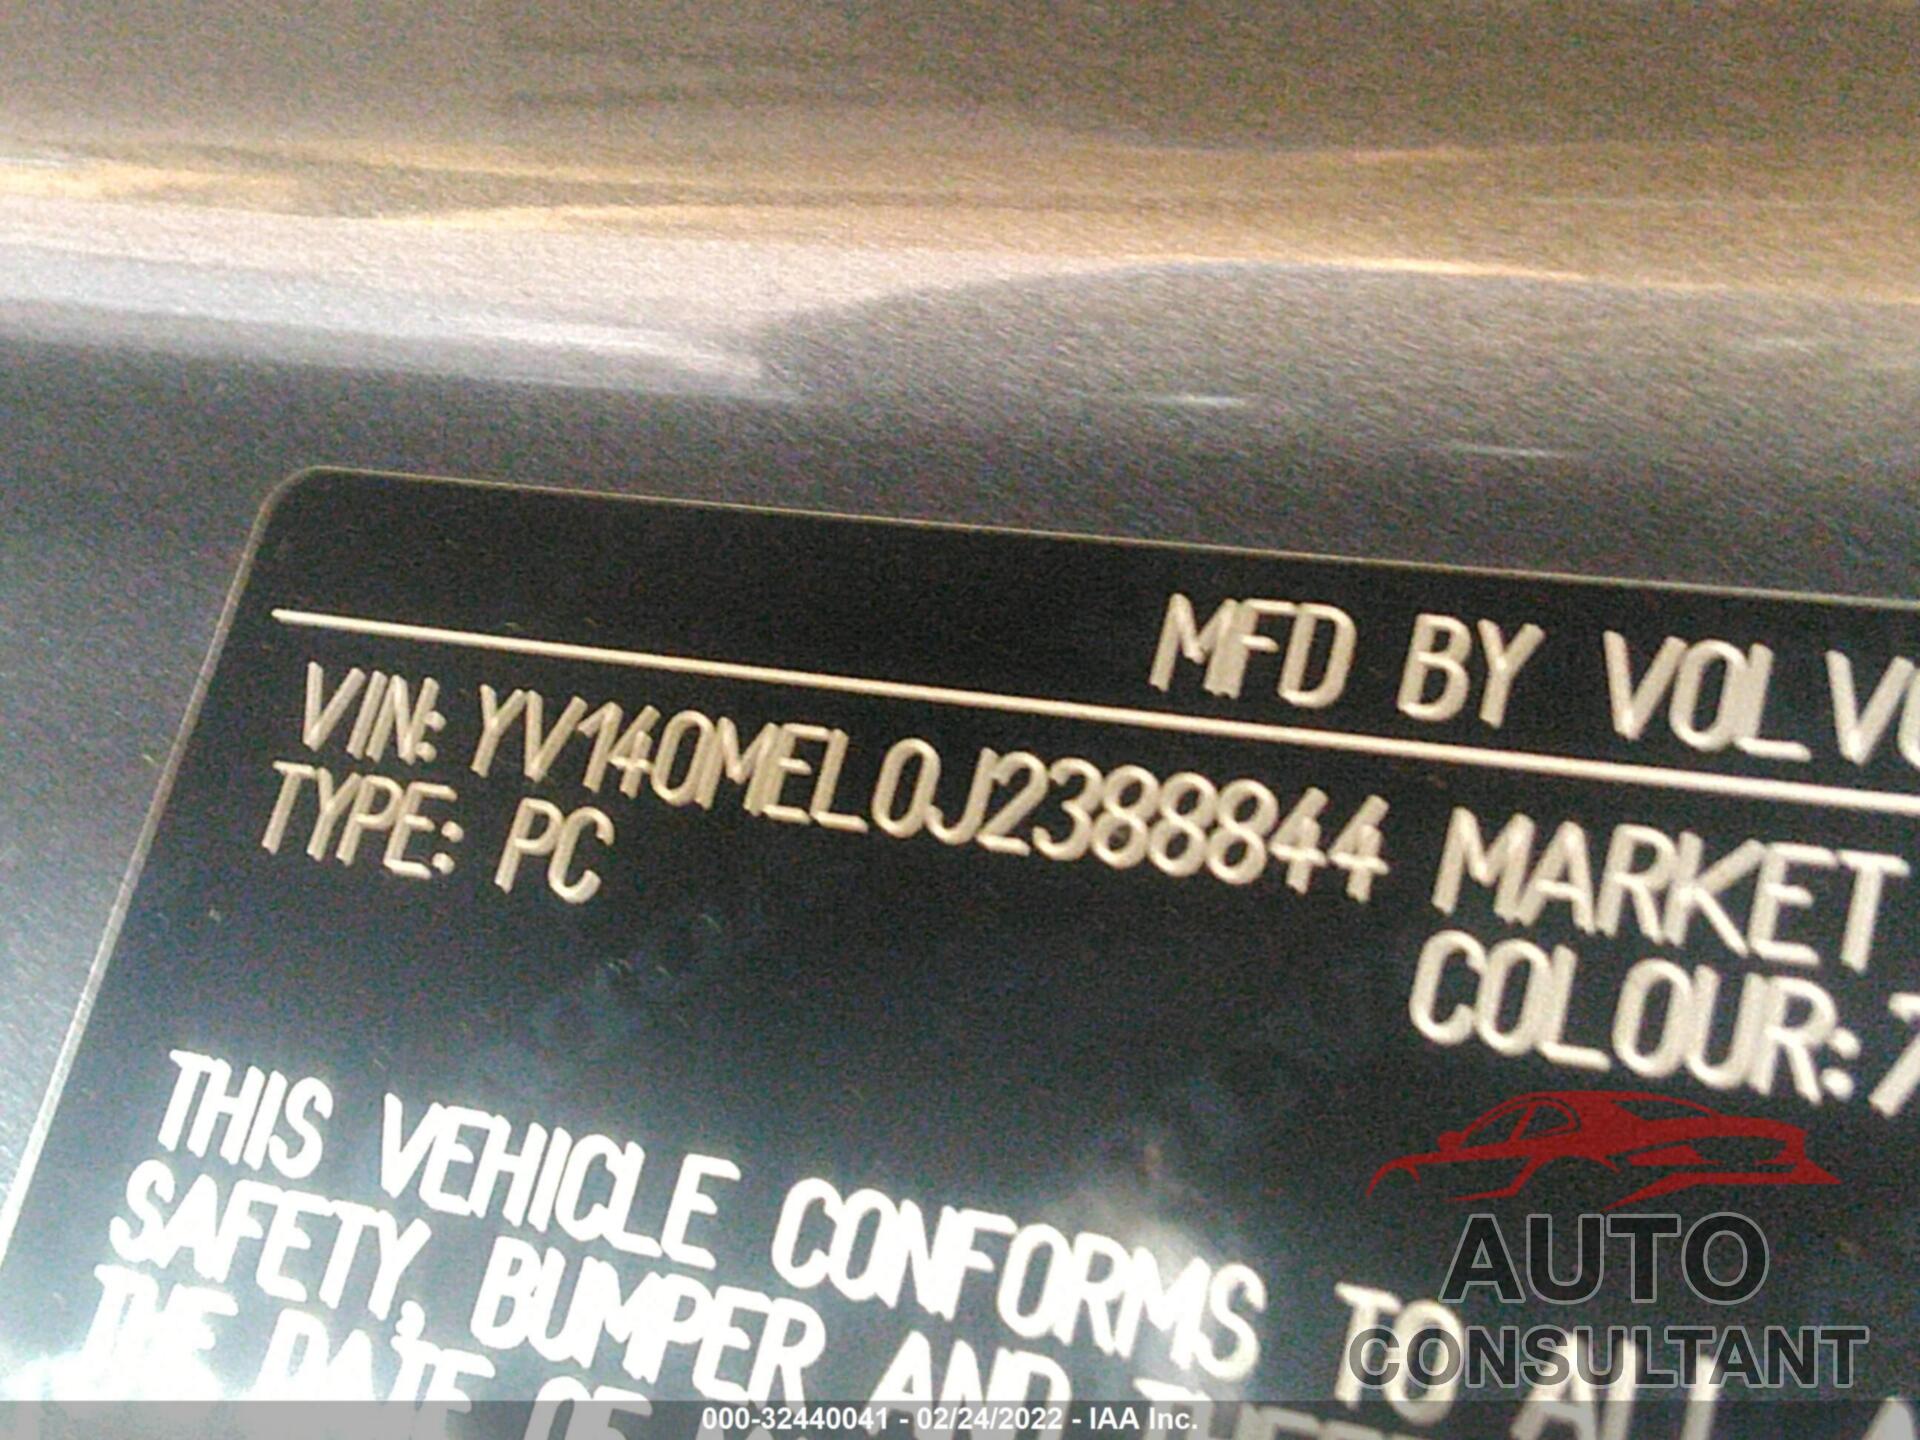 VOLVO V60 2018 - YV140MEL0J2388844